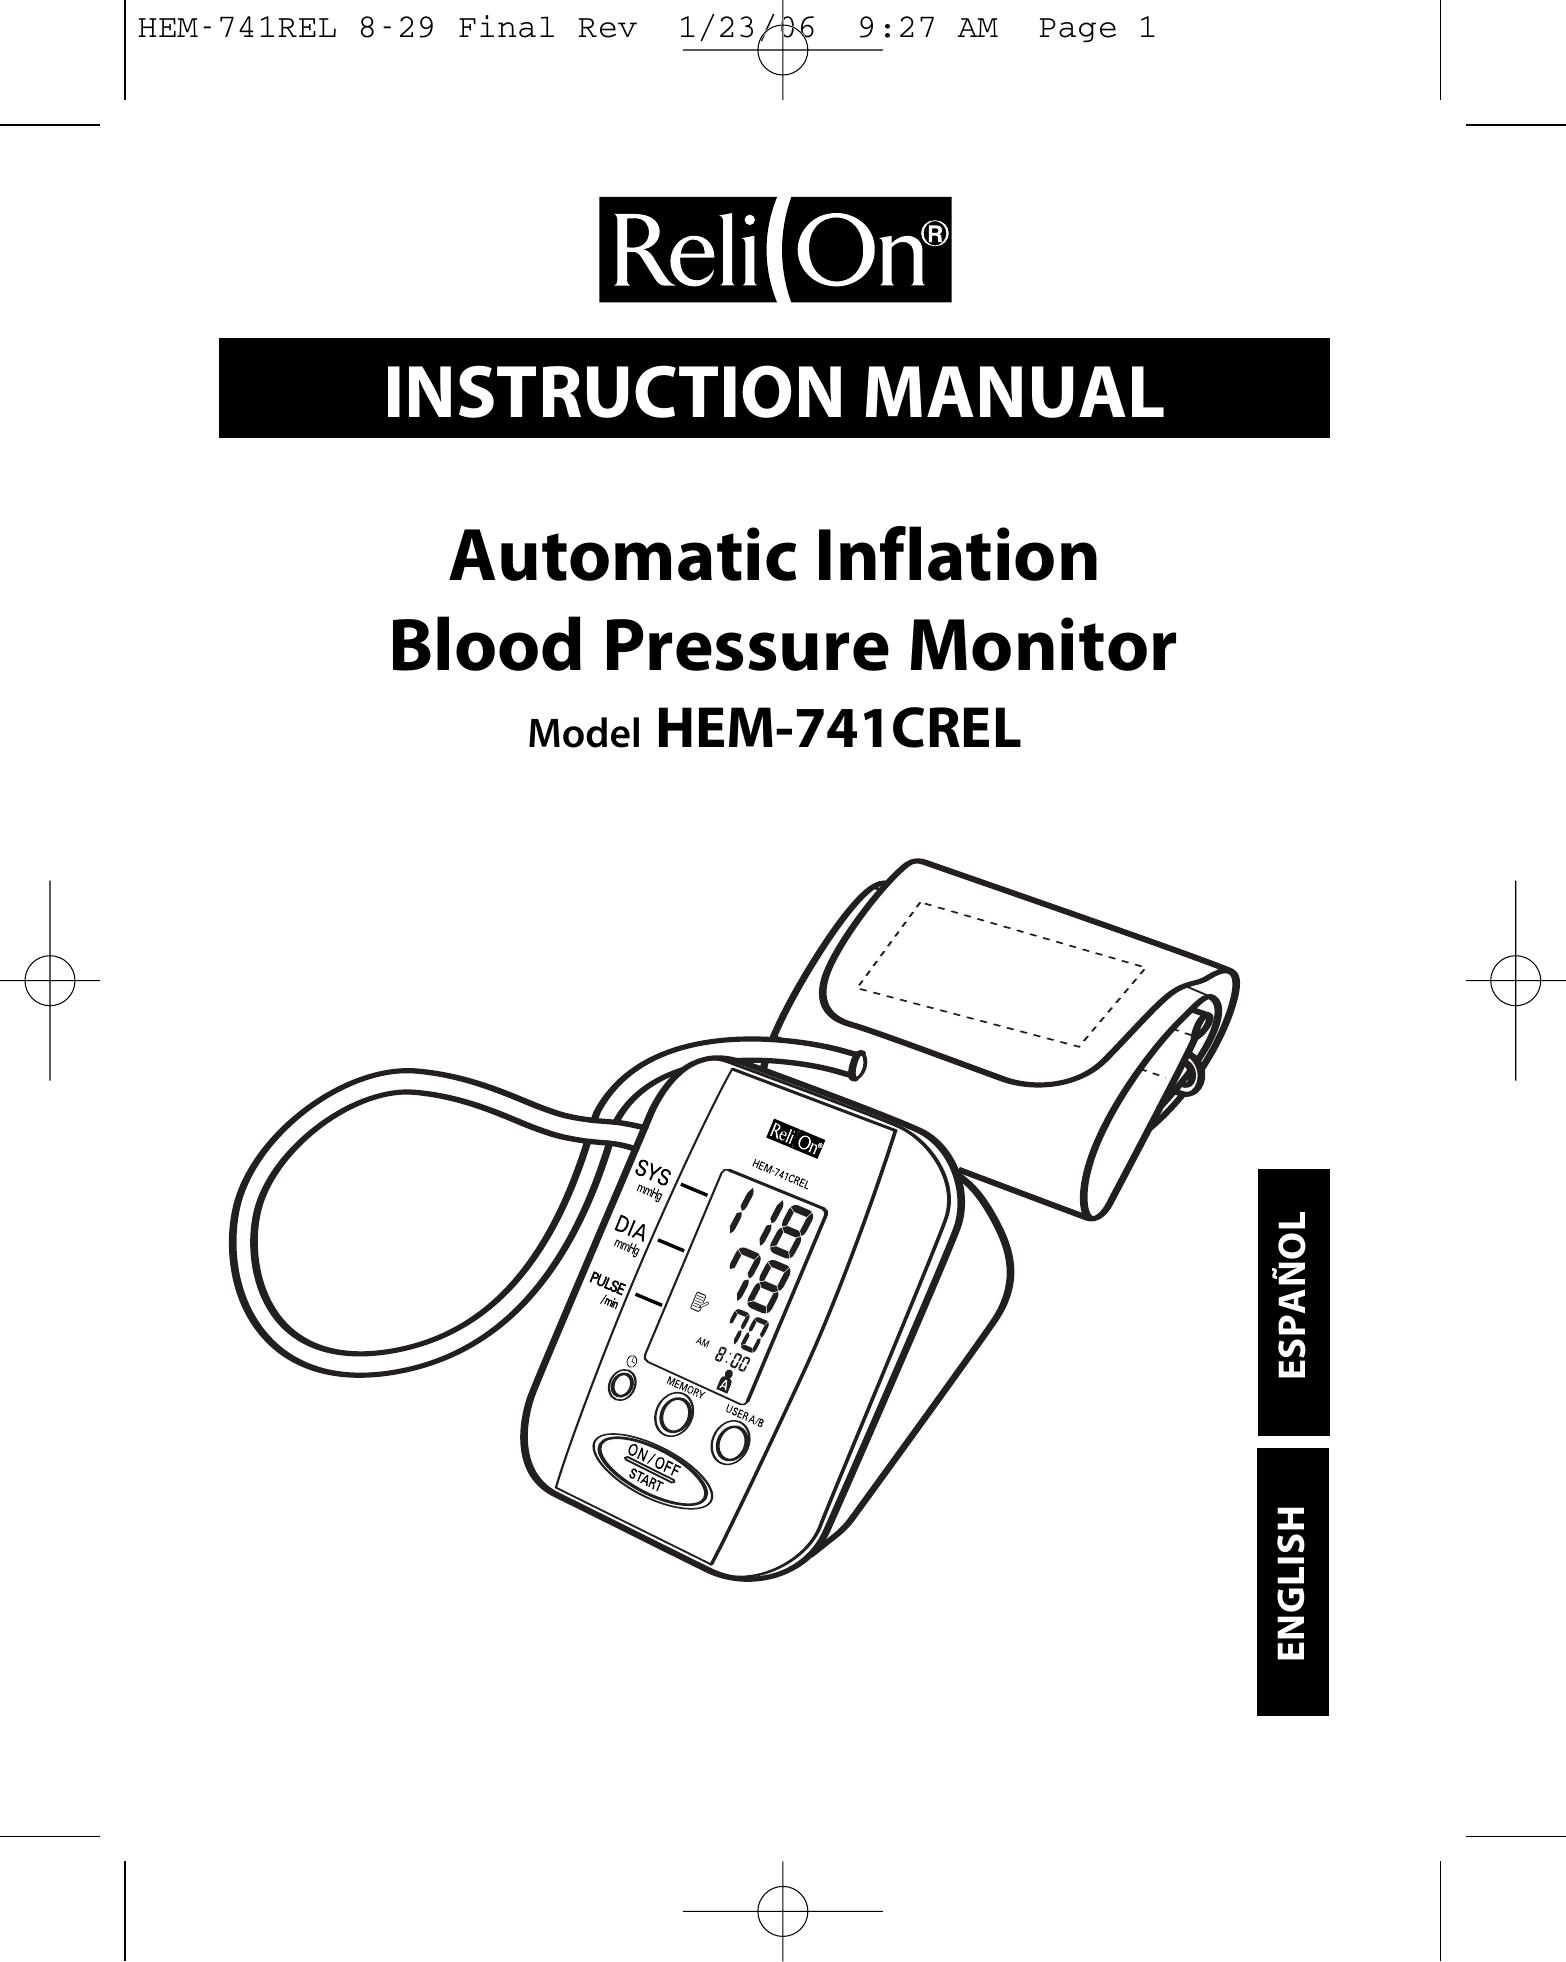 Omron Healthcare HEM-741CREL Blood Pressure Monitor User Manual